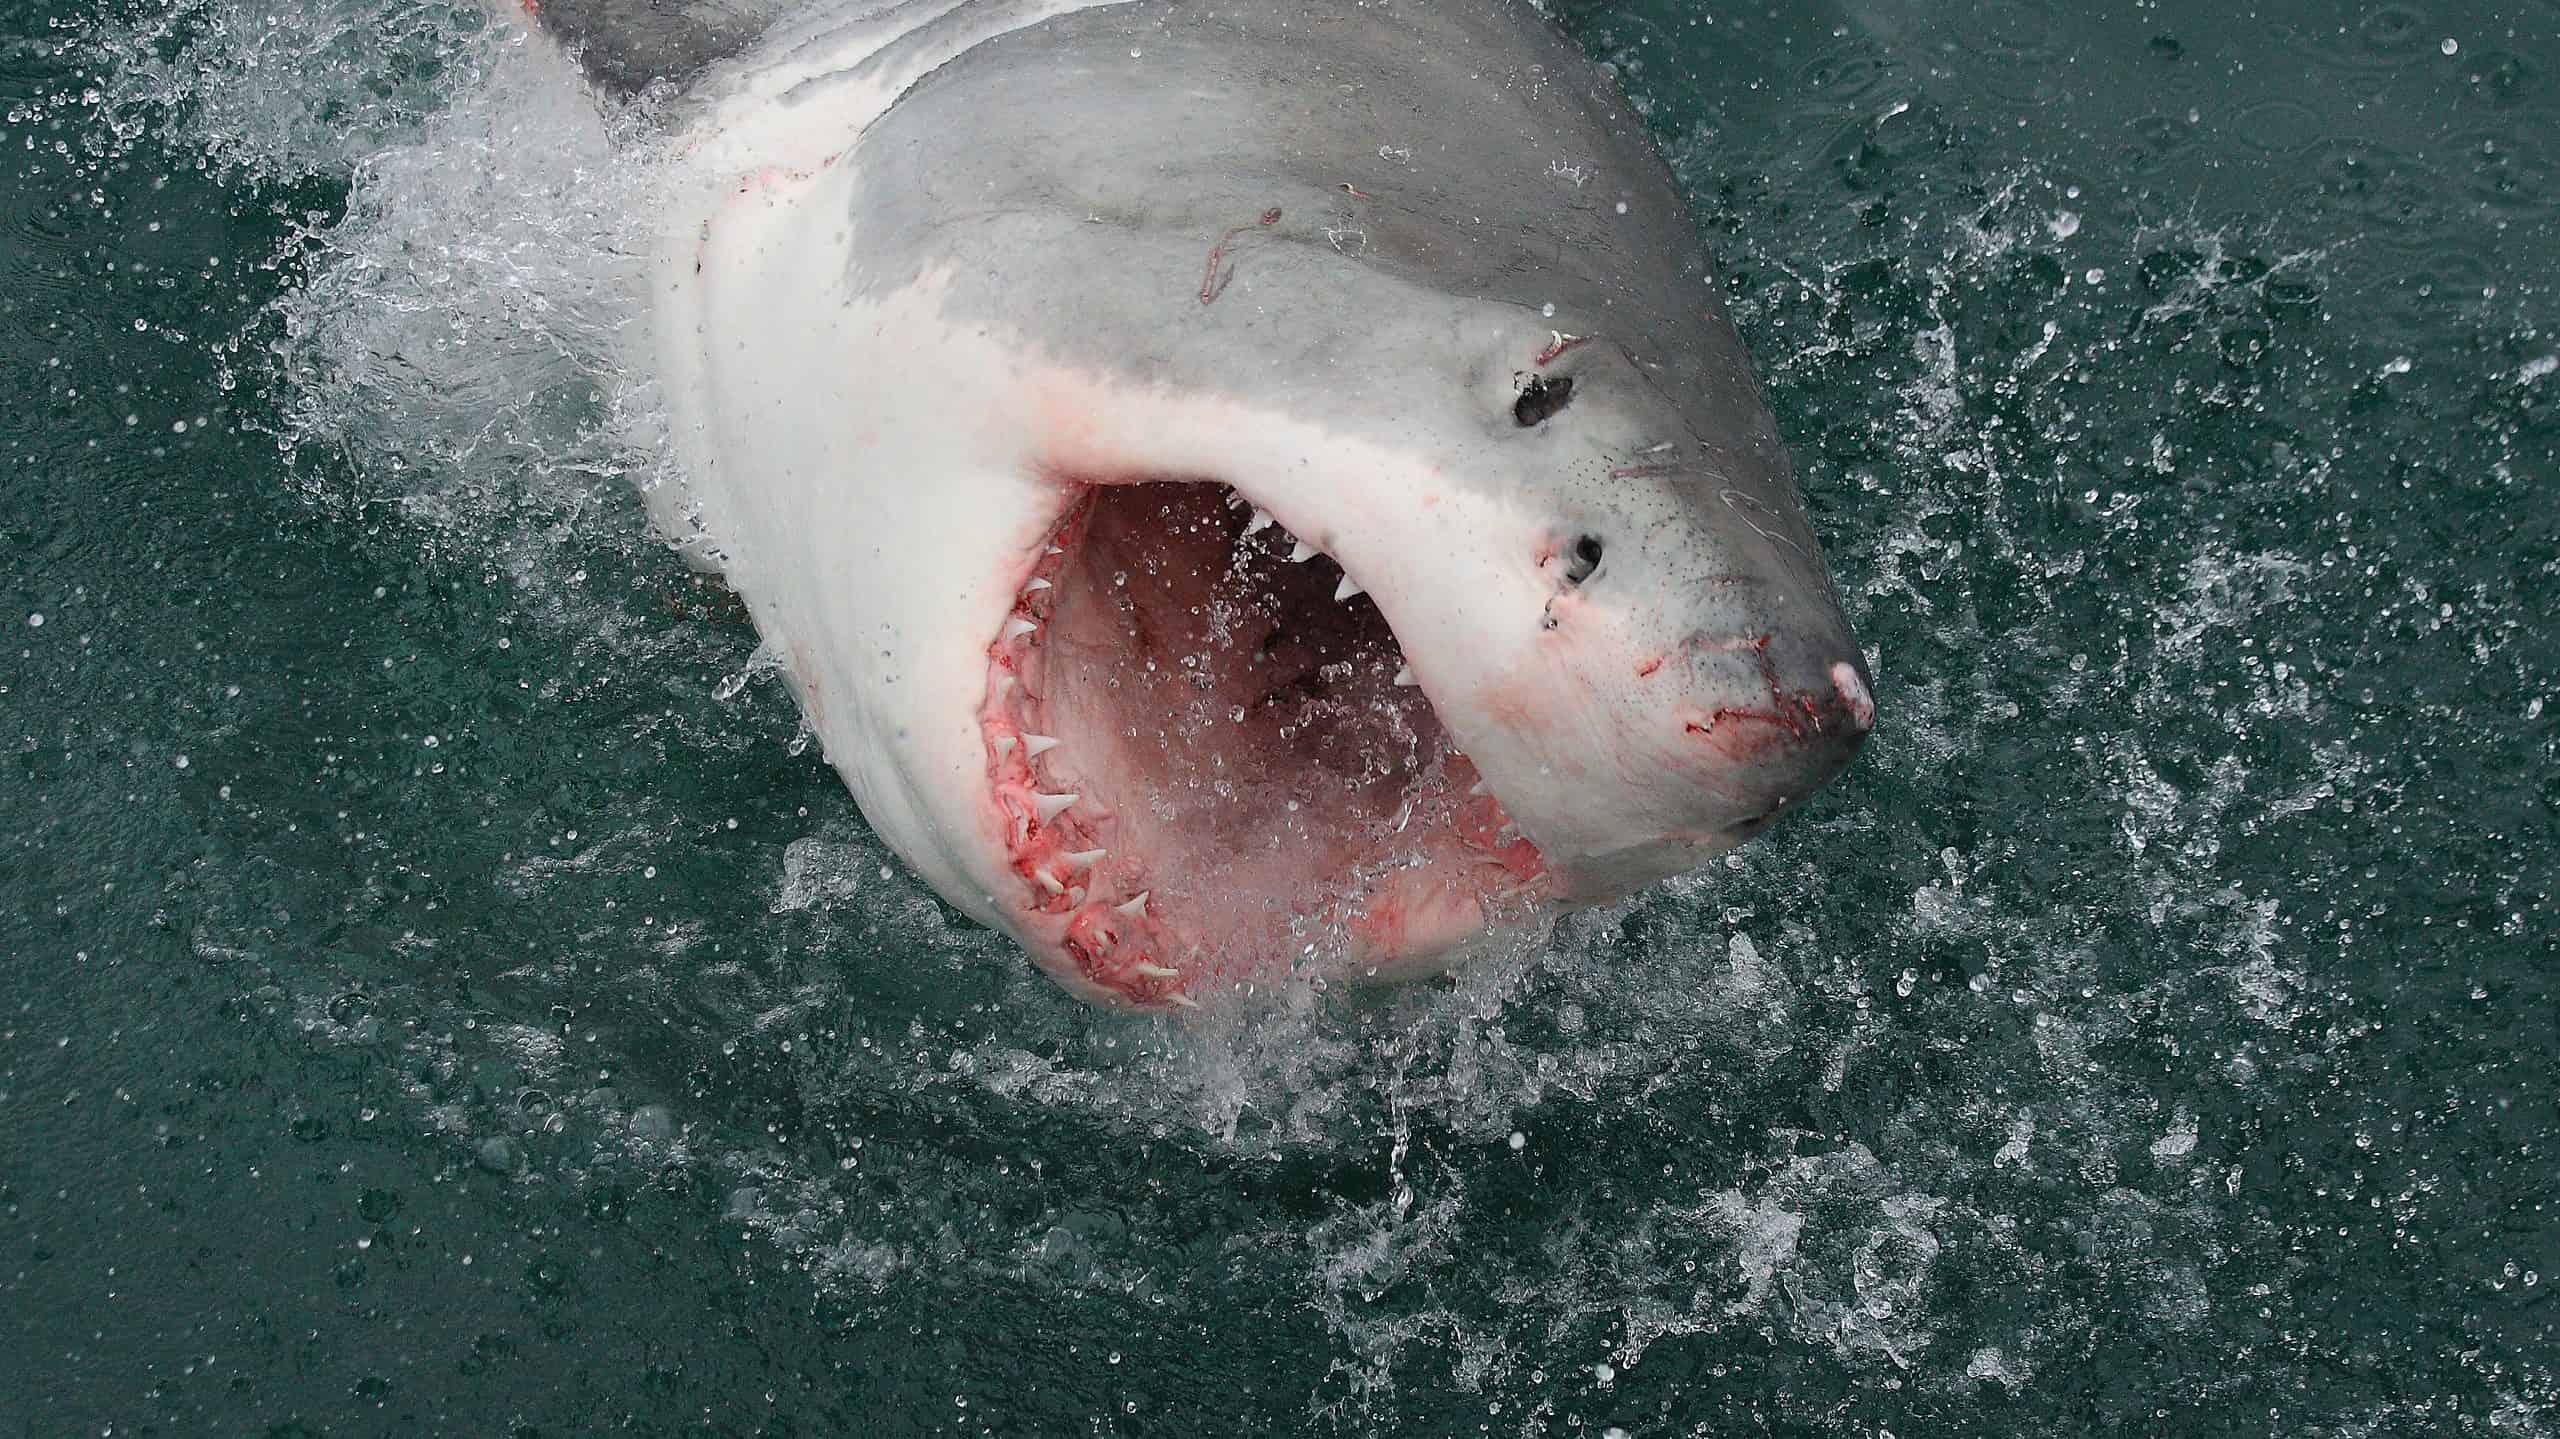 Great White Shark breaching the water